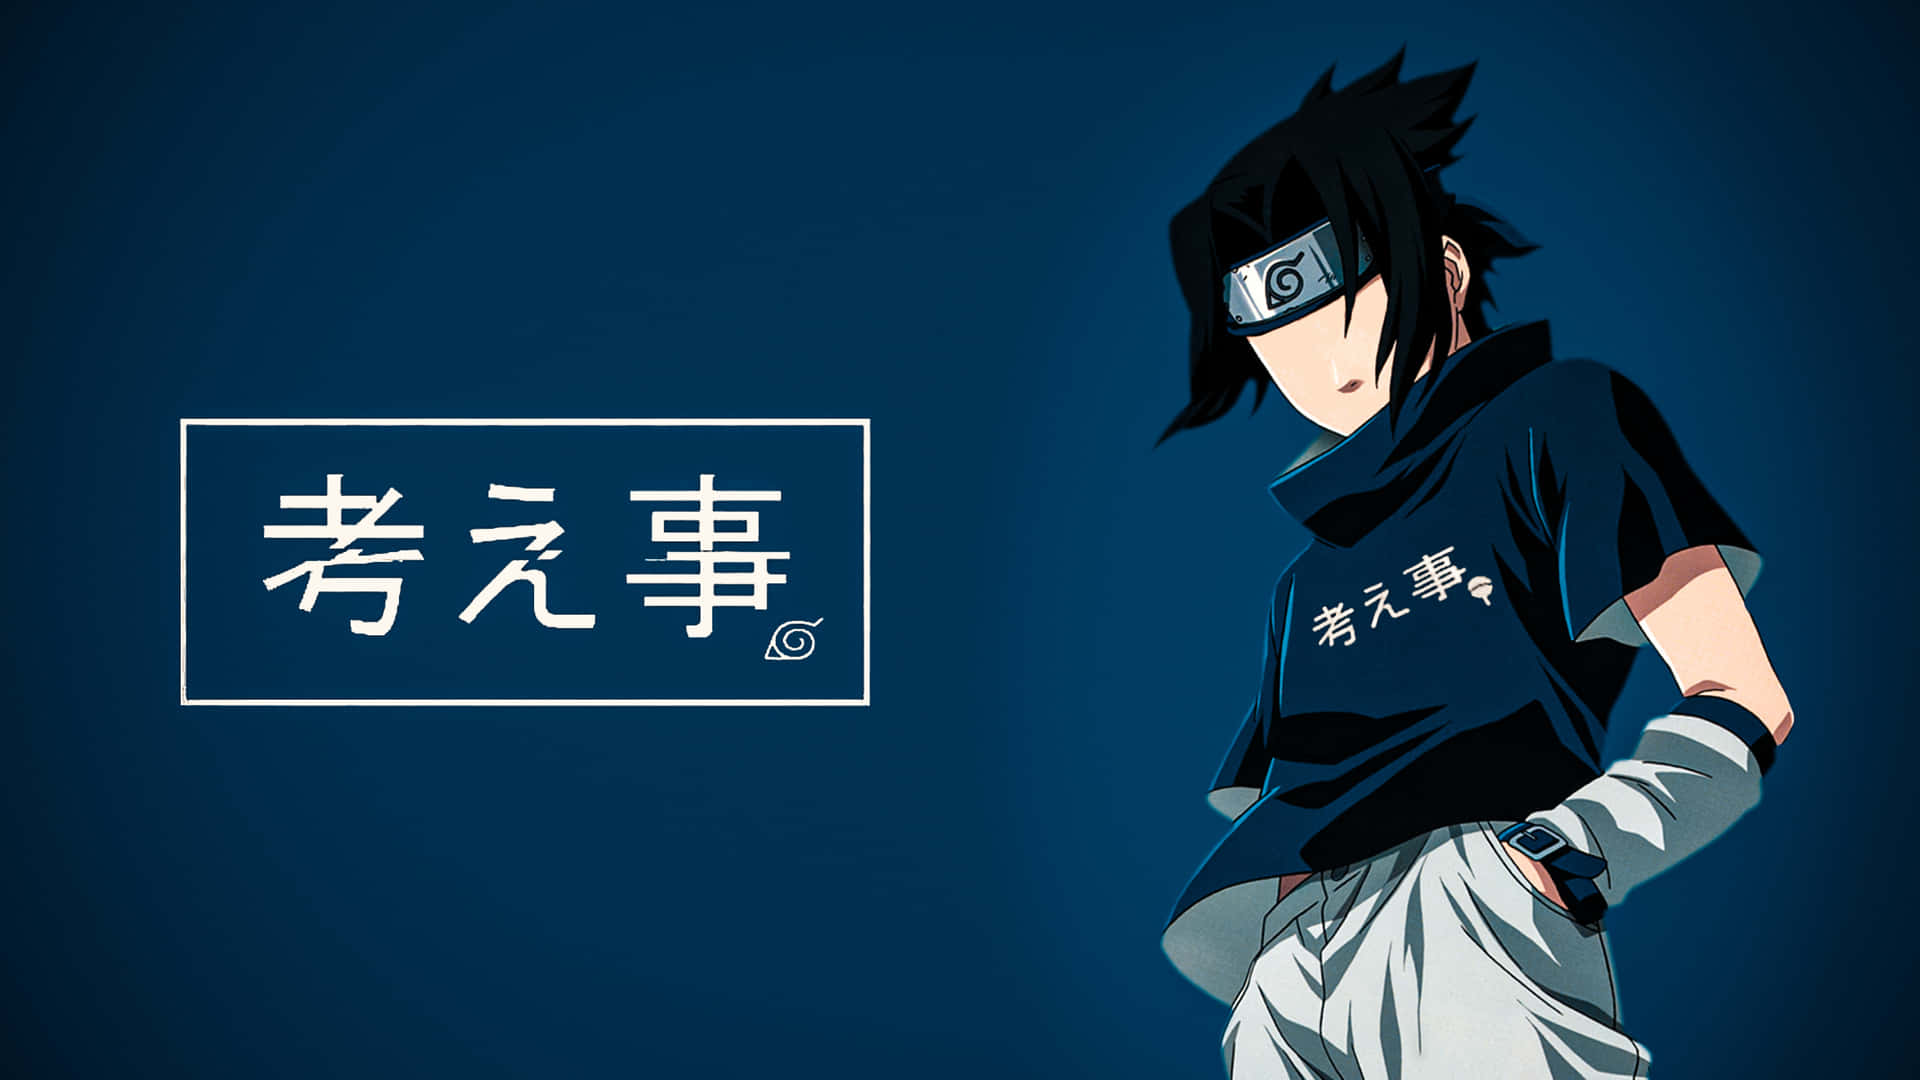 Blue Sasuke: Blue Sasuke - màu sắc lạnh lẽo nhưng cũng đầy quyến rũ và nổi bật. Hãy xem các hình nền độc đáo về nhân vật điển trai và cá tính này trong trang web để thấy rõ sự khác biệt. Nhanh tay truy cập và tìm cho mình bức ảnh ưng ý nhất nhé!